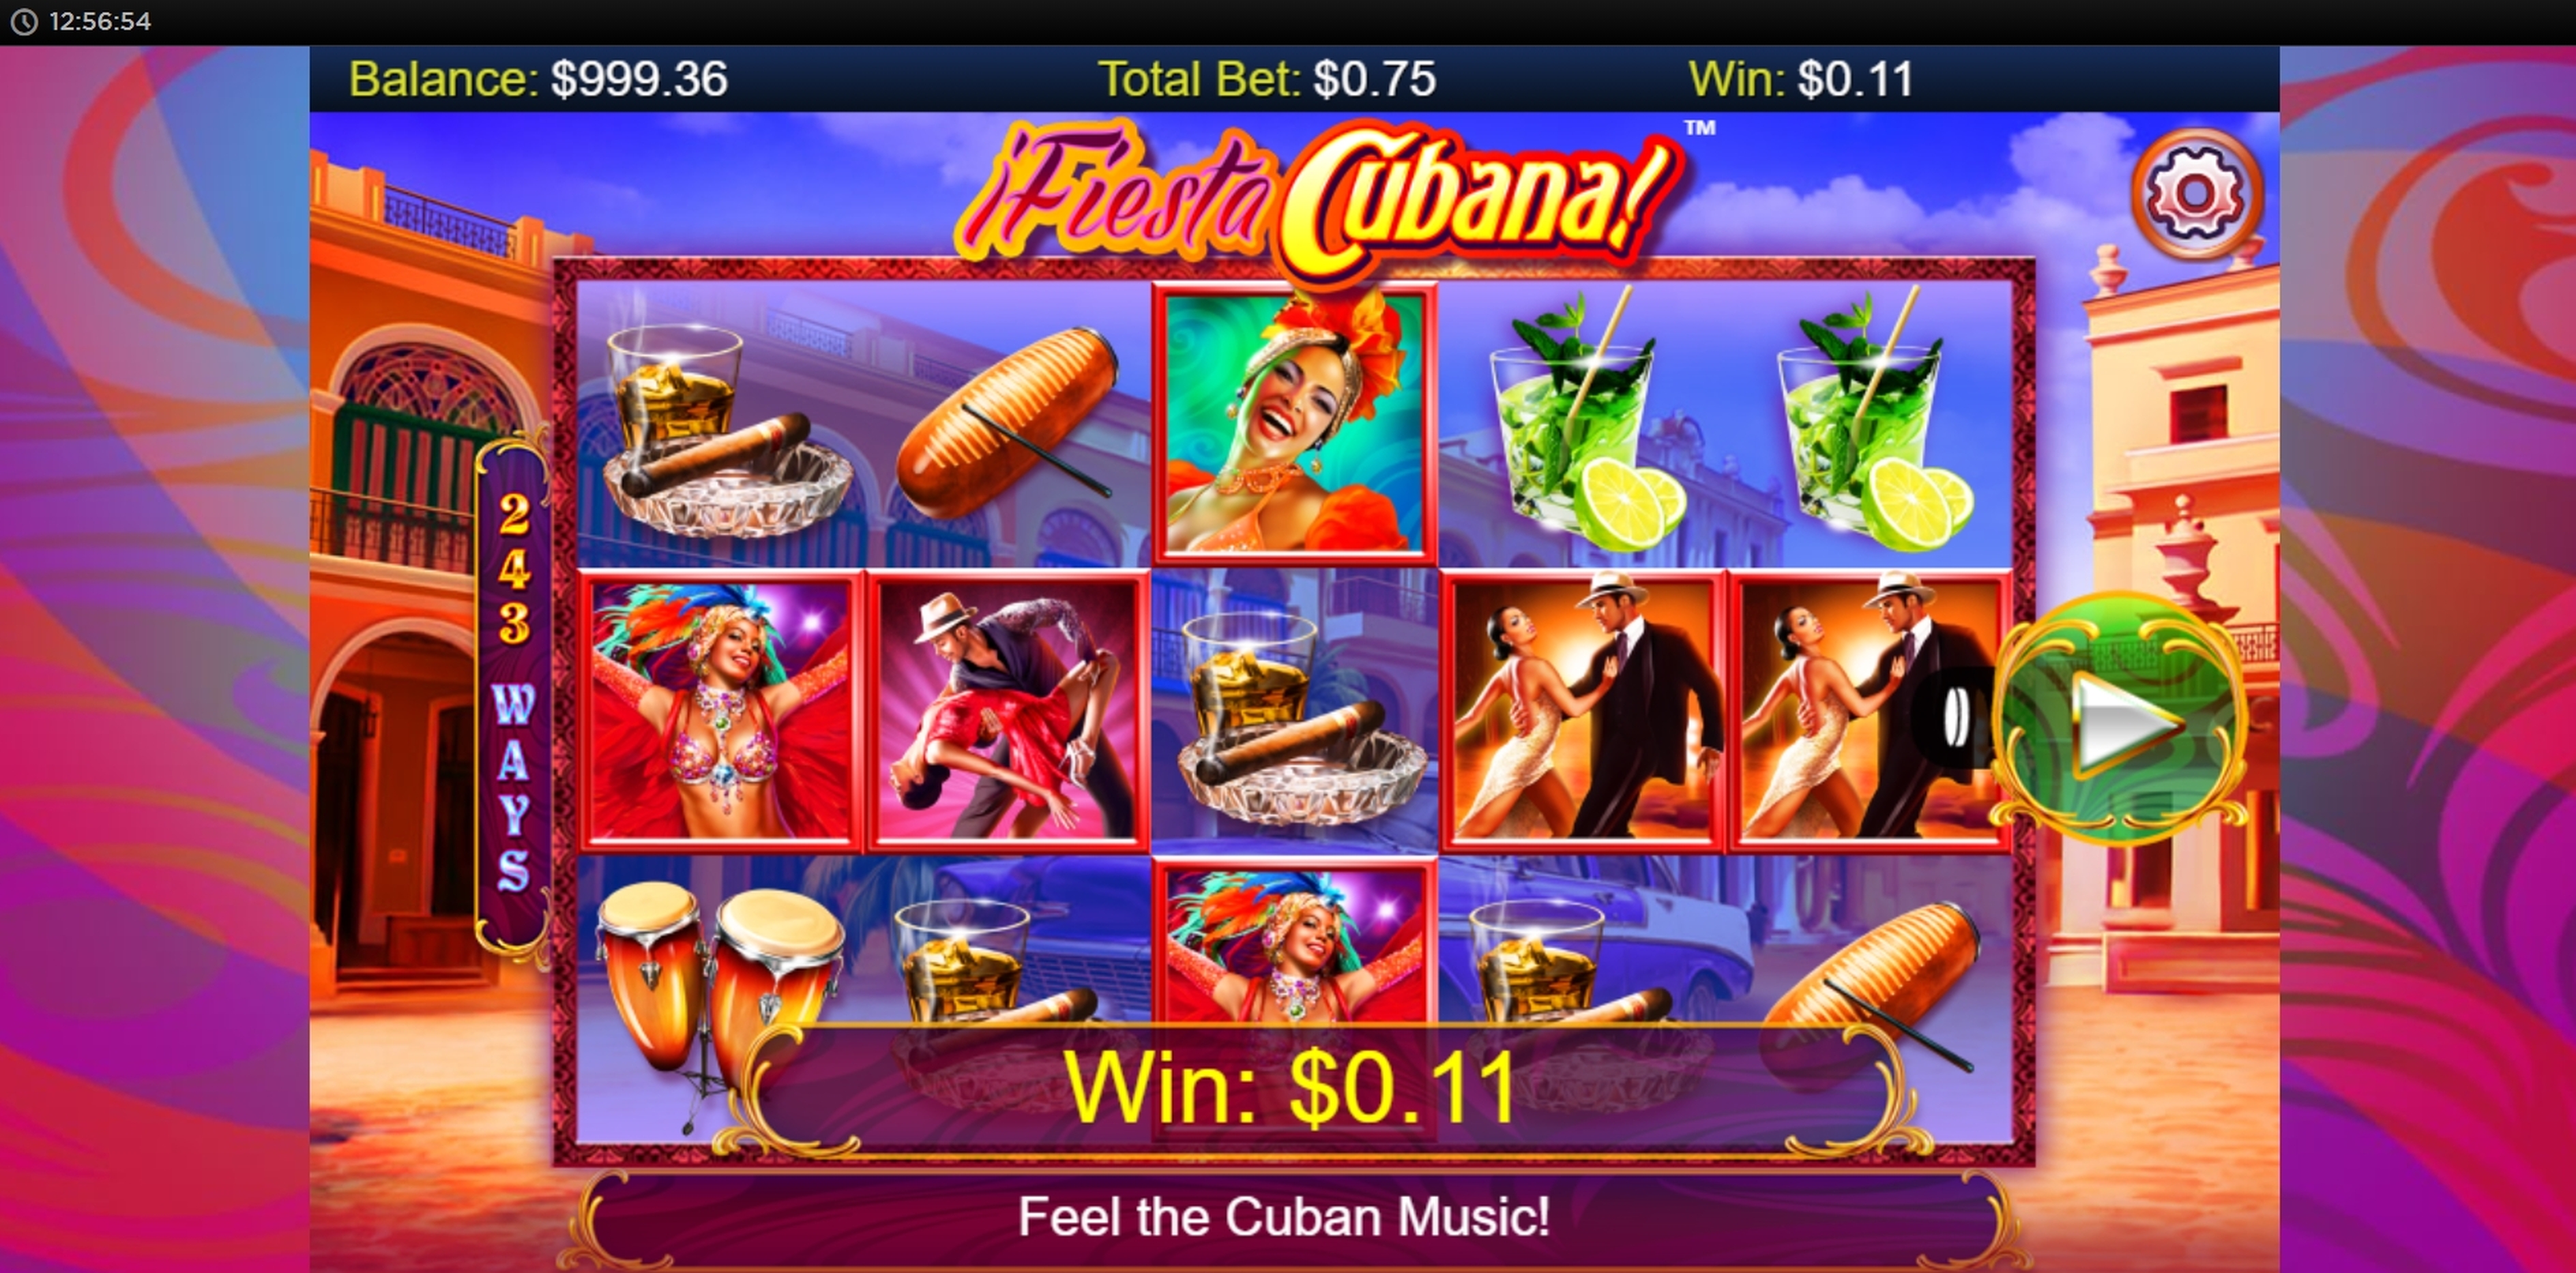 Win Money in Fiesta Cubana Free Slot Game by Side City Studios